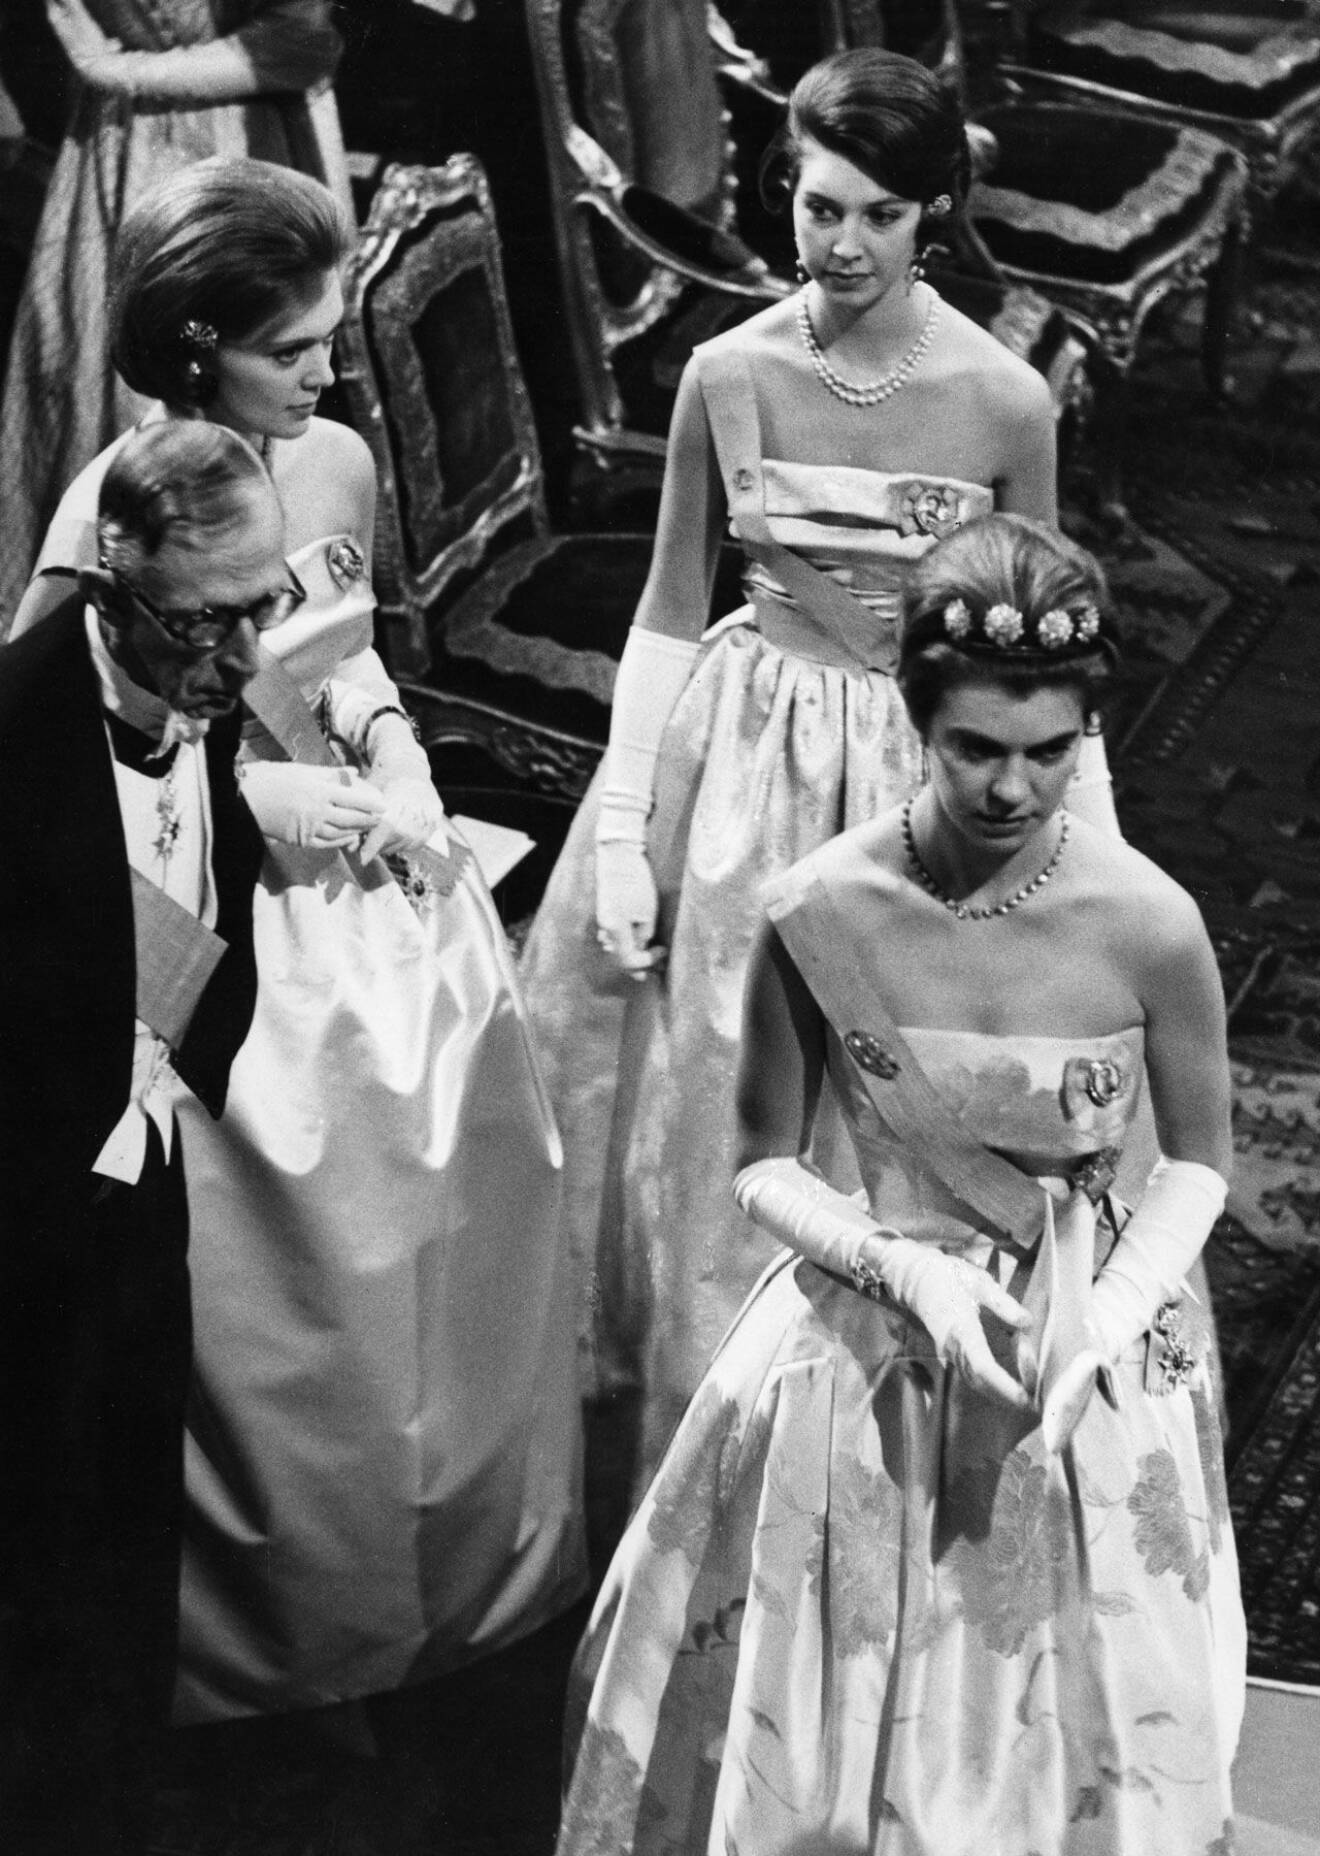 Hagasessorna i tiara: Prinsessan Birgitta, prinsessan Désirée och prinsessan Margaretha.